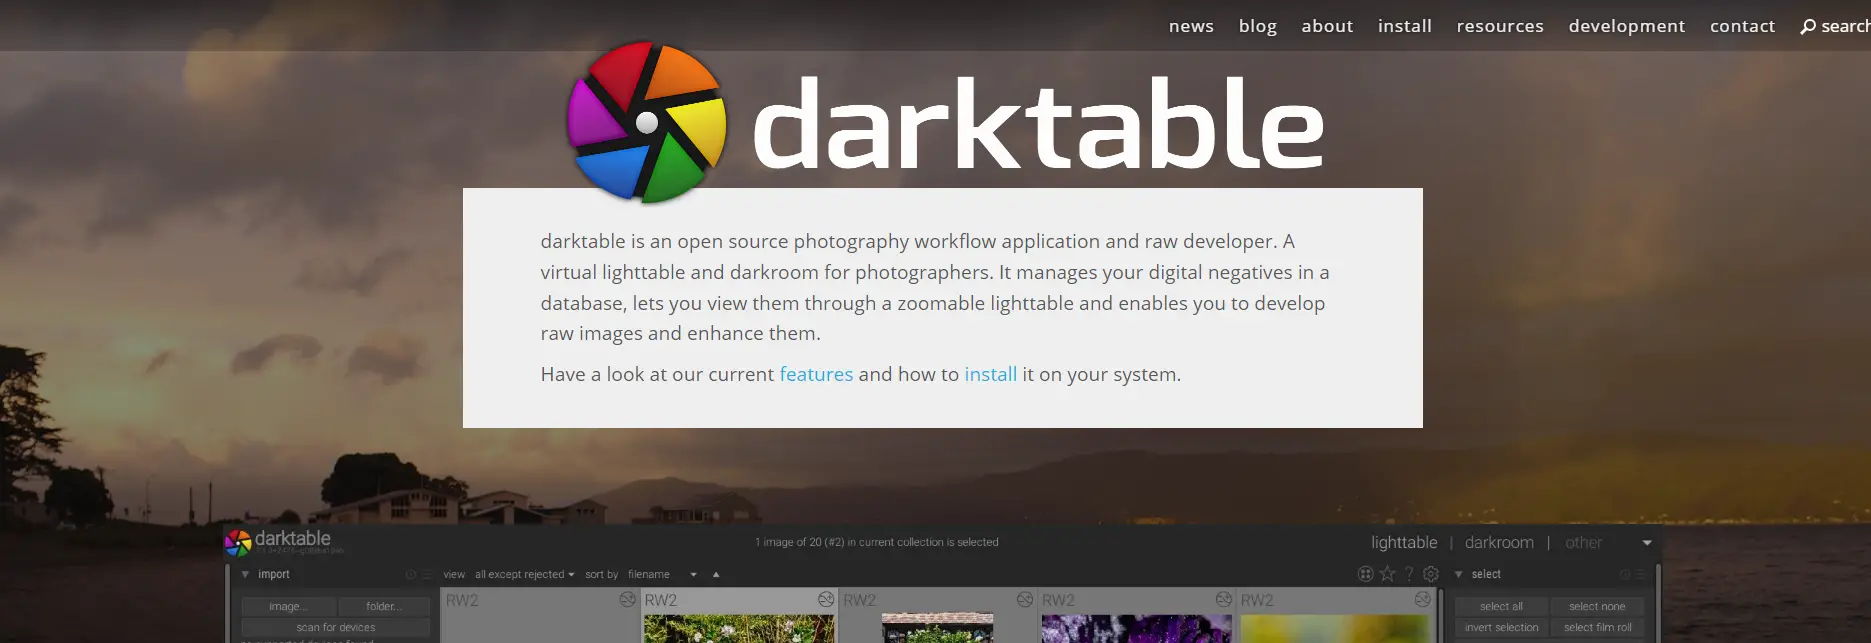 Darktable Software De Edición De Fotos En Blanco Y Negro De Código Abierto